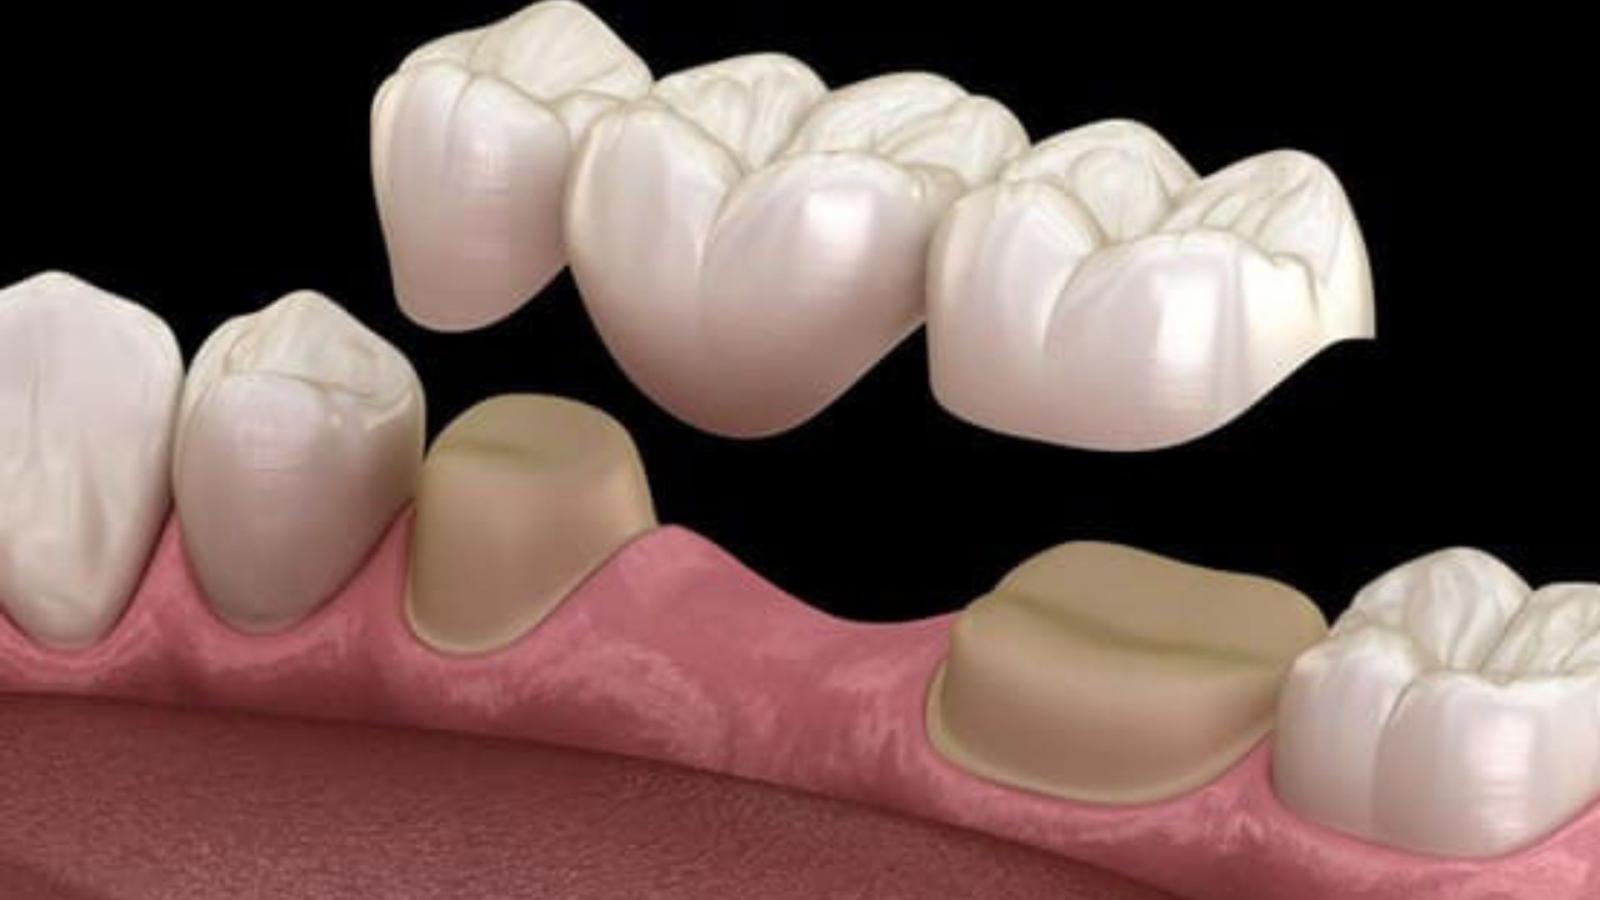 Cầu răng sứ là gì?